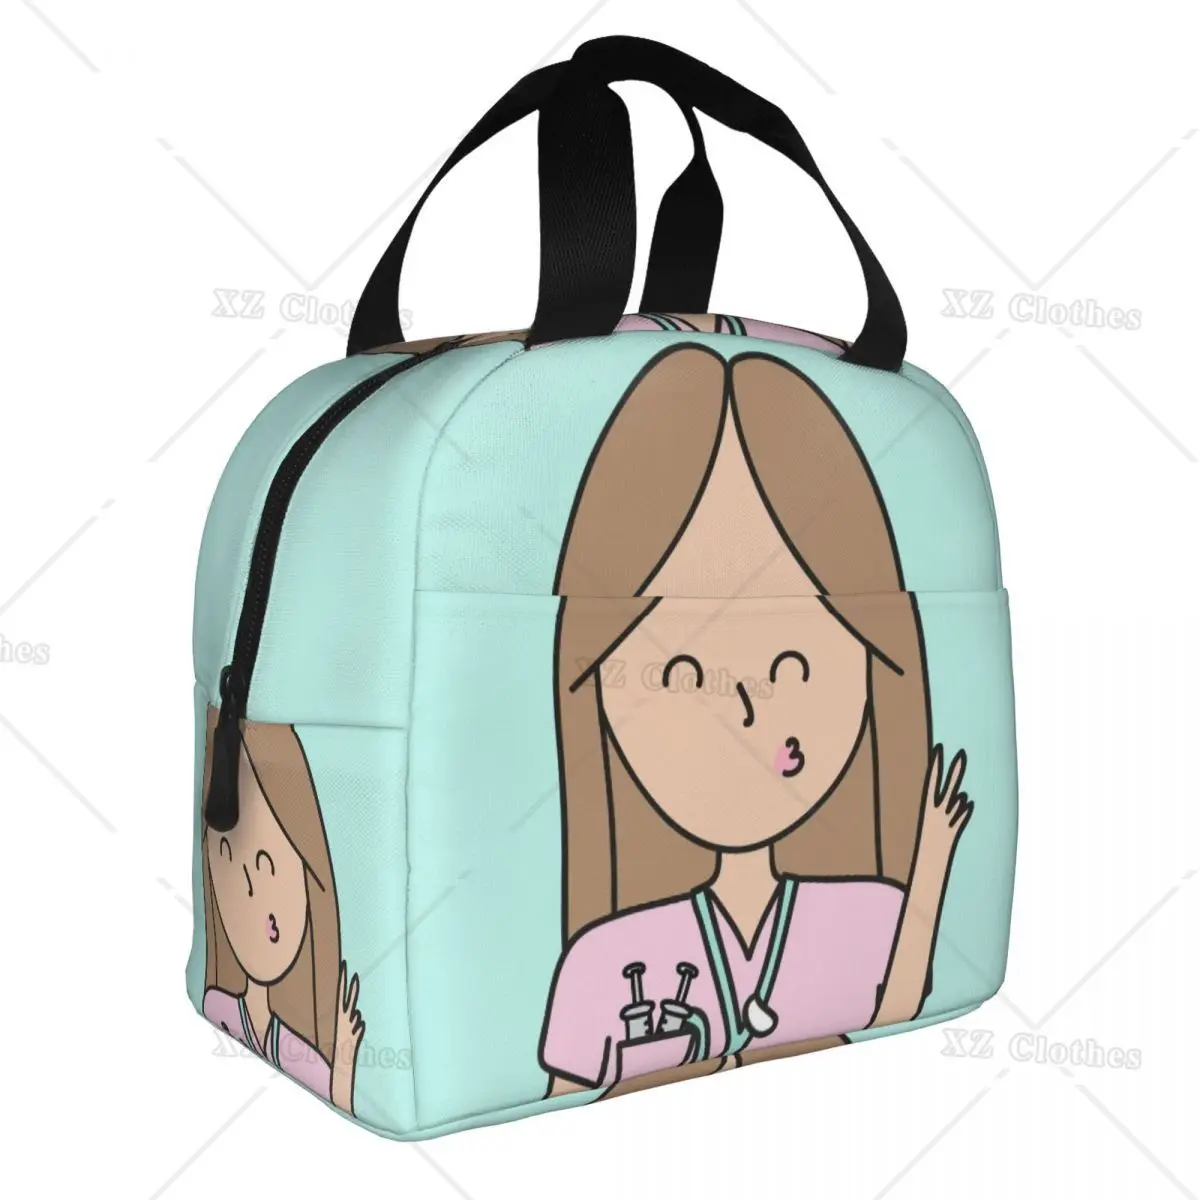 

Мультяшные Изолированные сумки для ланча доктор медсестра, многоразовая Термосумка для медсестер, Ланч-бокс для мужчин и женщин, для работы, пикника, поездки